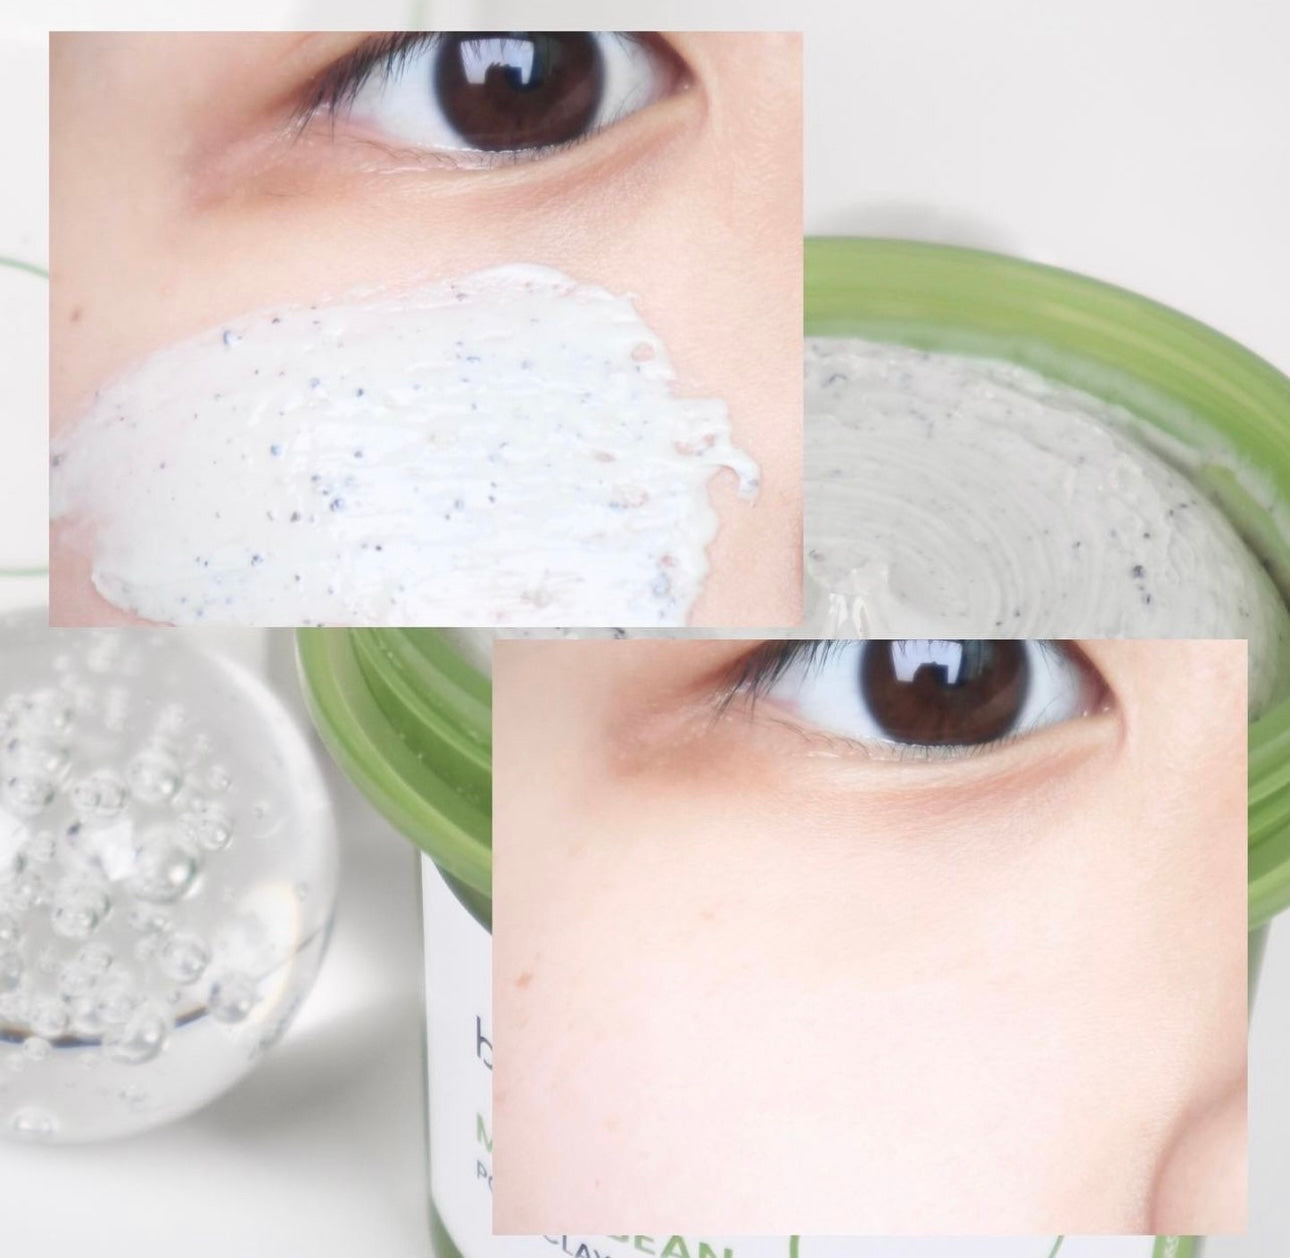 三分鐘淨化毛孔|Beplain Mung Bean Pore Clay Mask  |綠豆酵素毛孔清潔泥膜120ml | Leo 同 beplain 共同設計開發💫